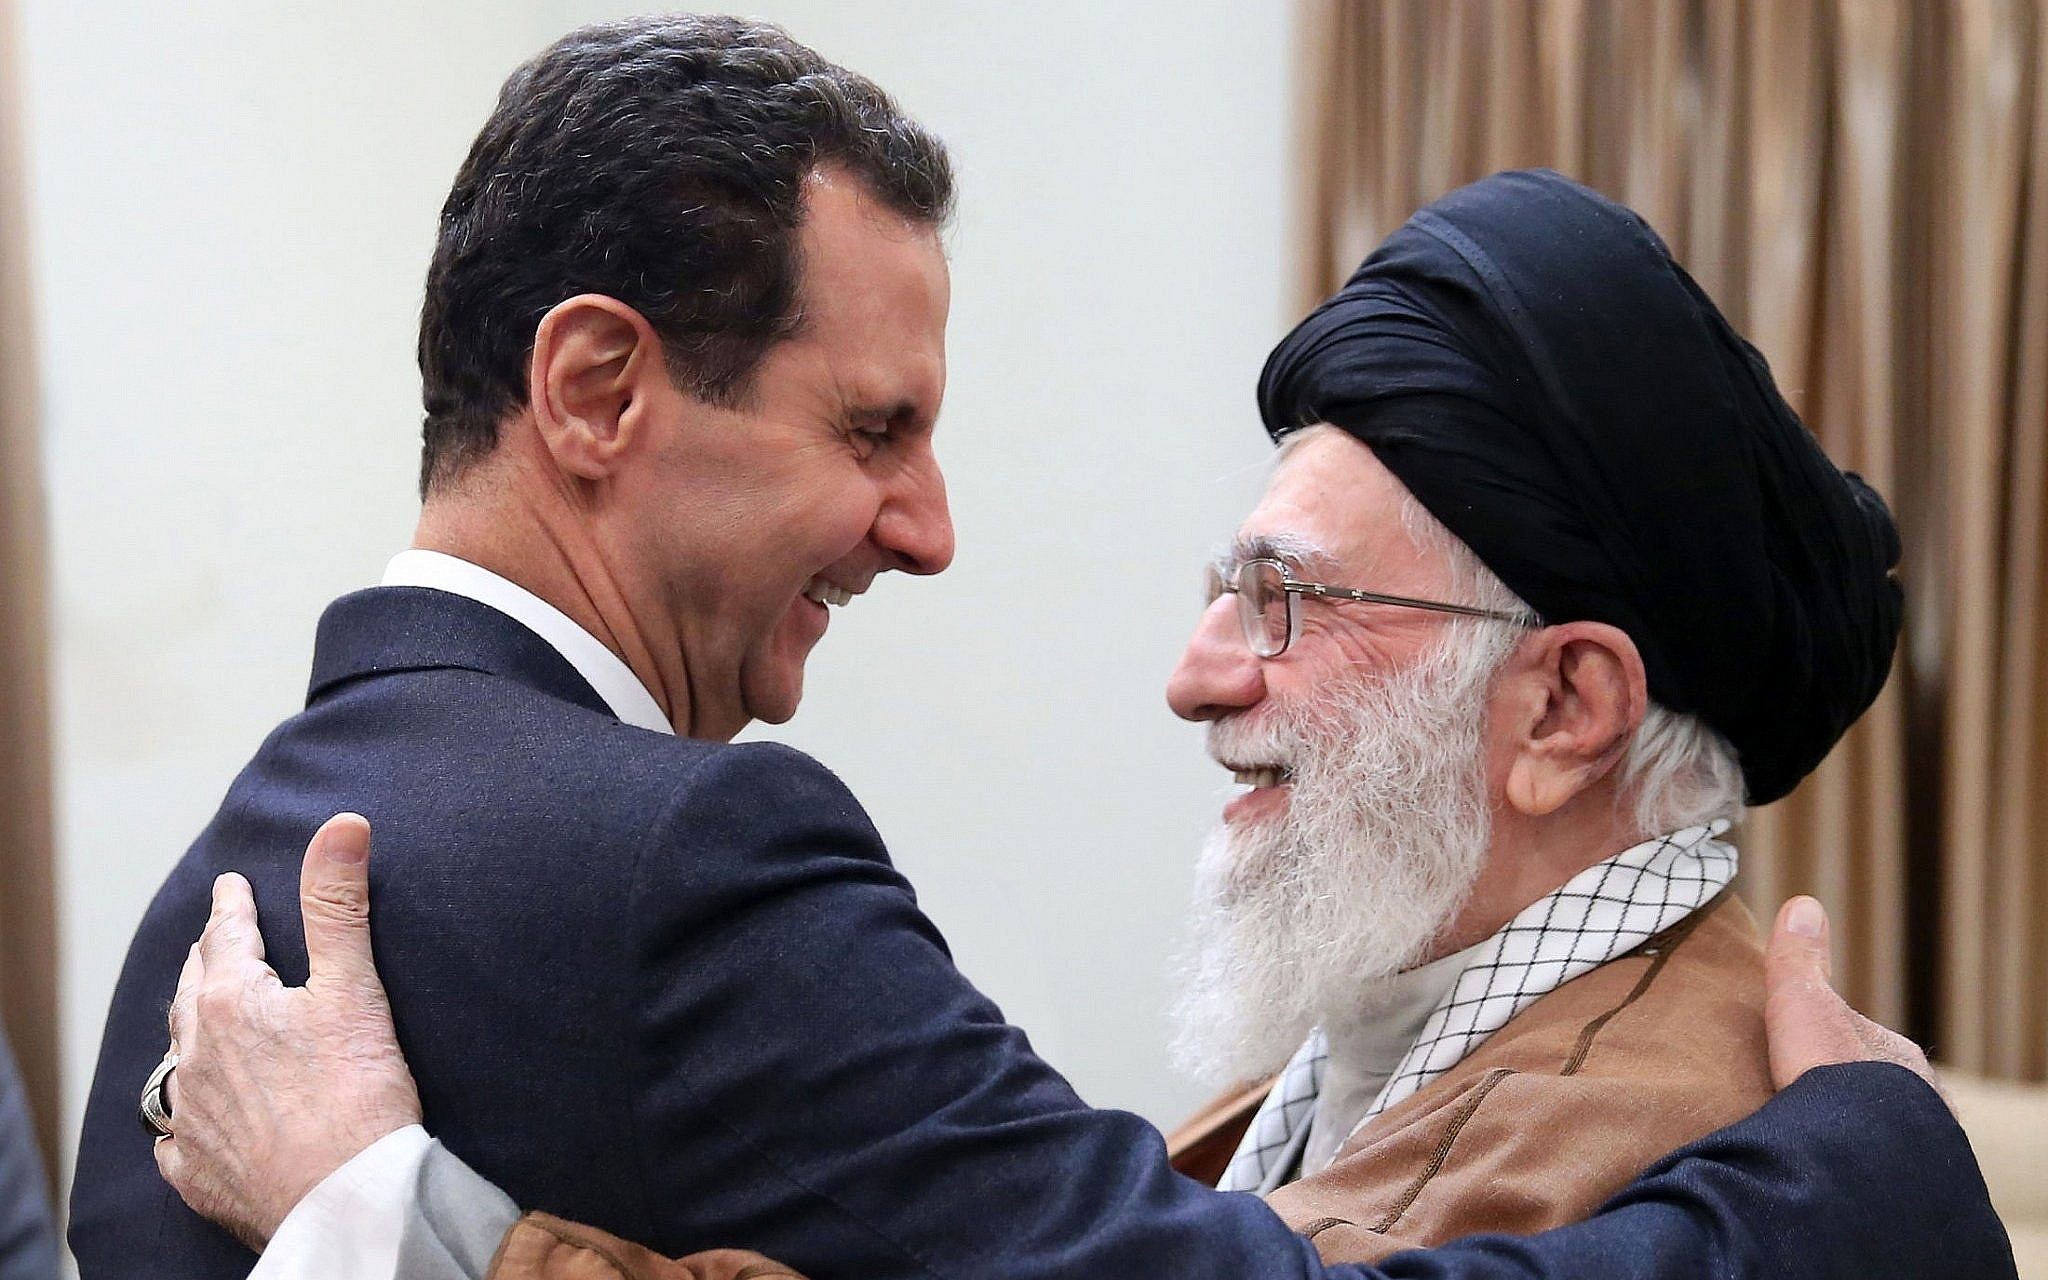 Iran's embrace of Bashar Assad: An indelible shame